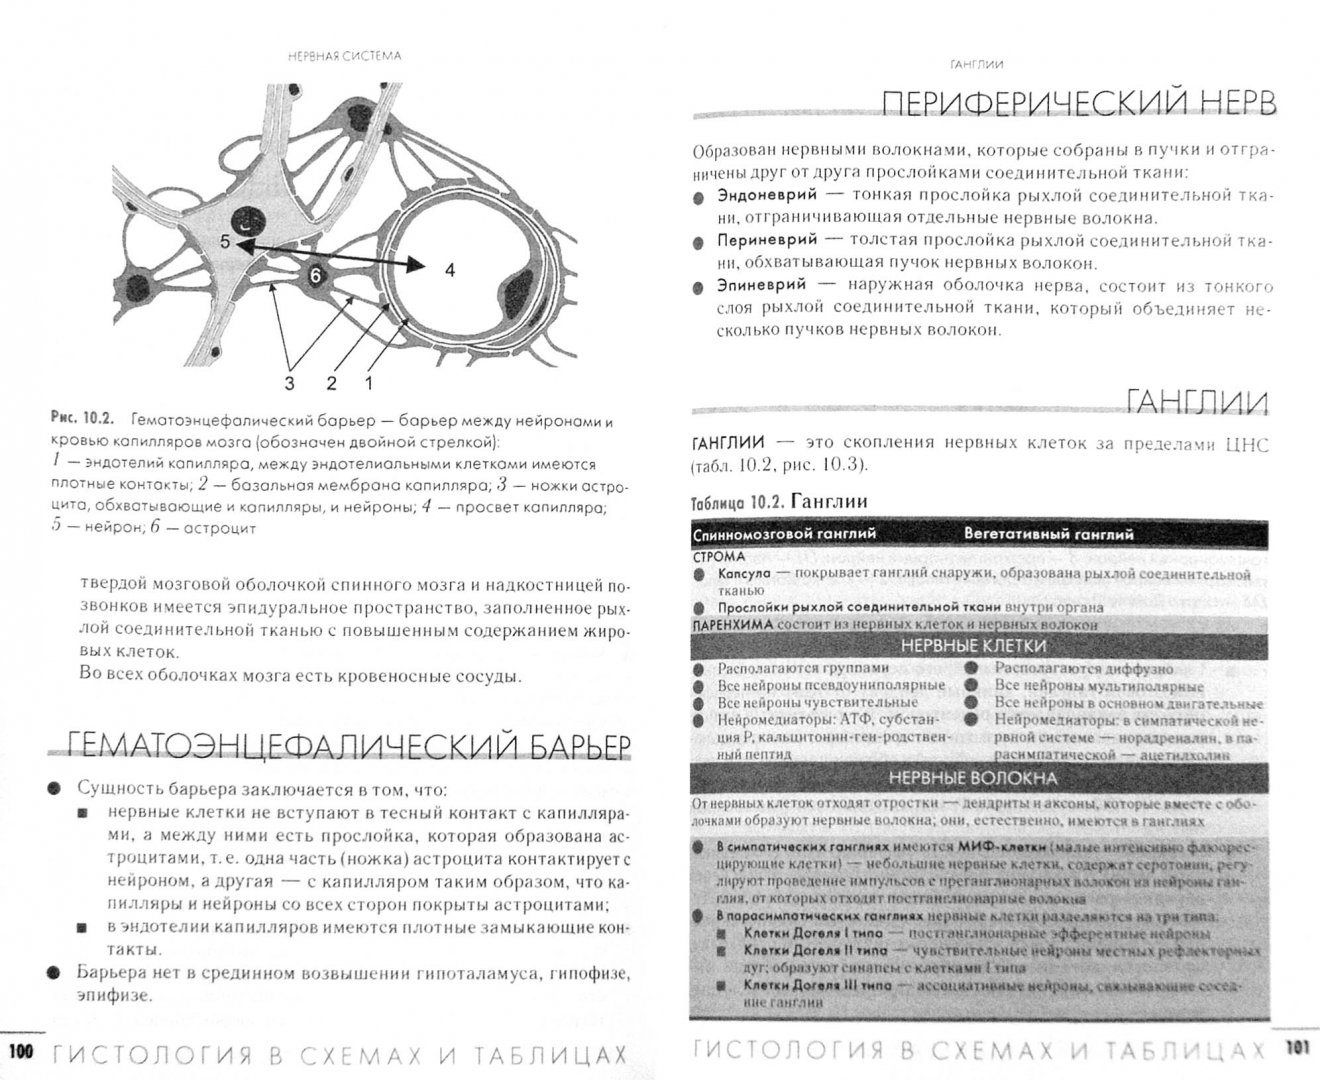 Иллюстрация 1 из 6 для Гистология в схемах и таблицах. Учебное пособие - Андрей Гунин | Лабиринт - книги. Источник: Лабиринт